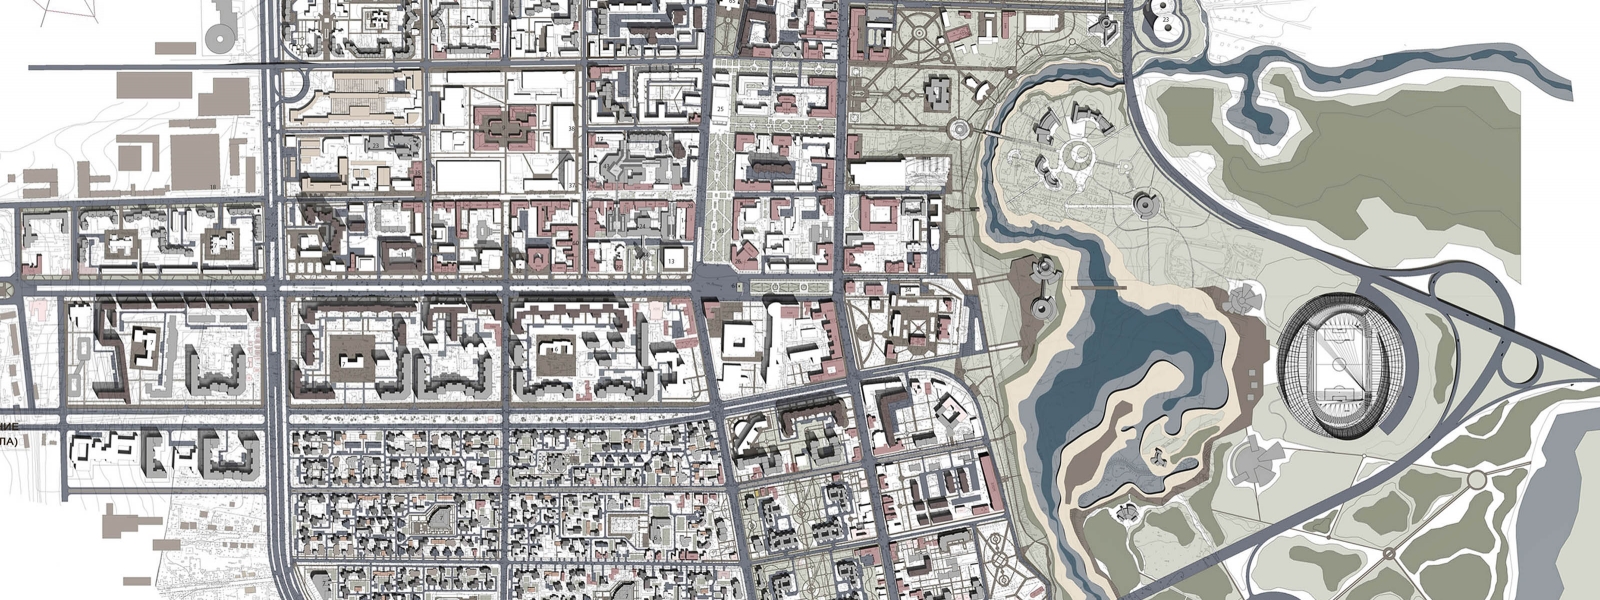 work-Проект планировки центральной части Тамбова